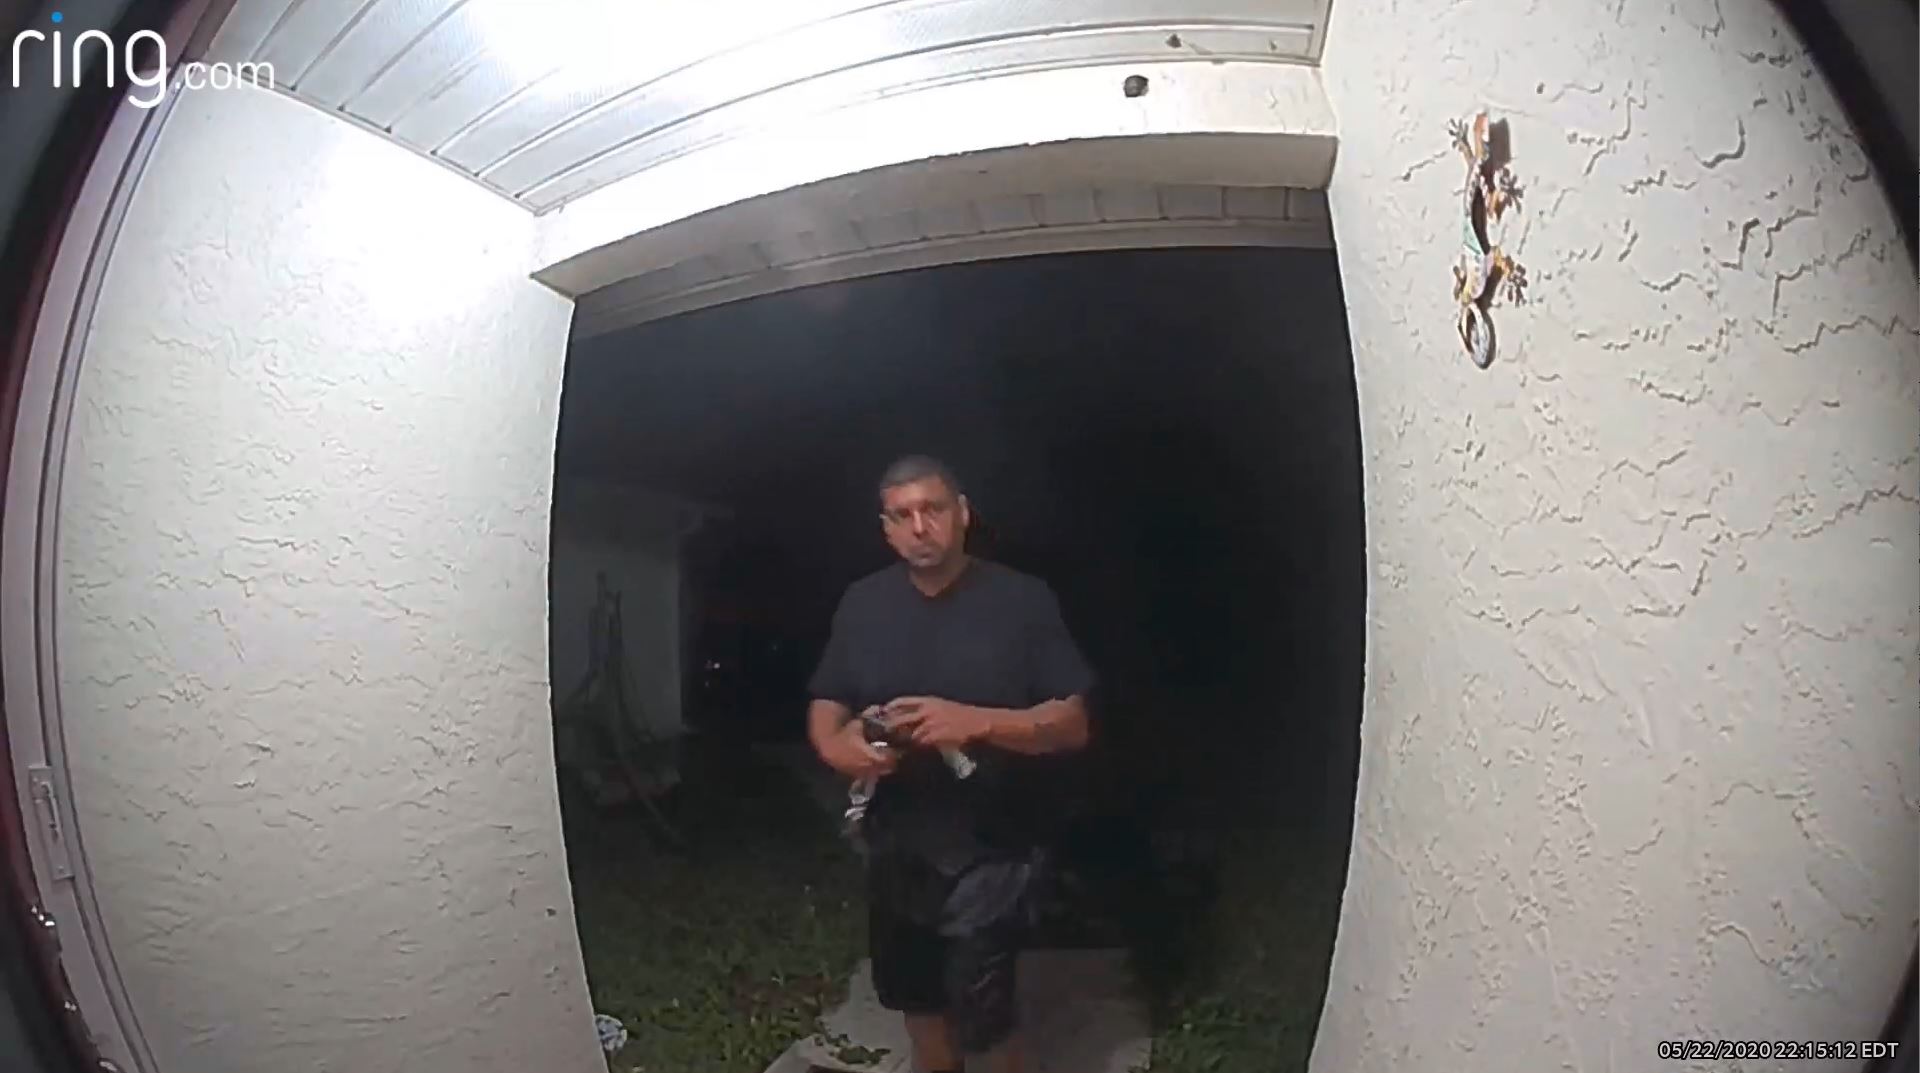 a ring doorbell surveillance image shows a man approaching a door